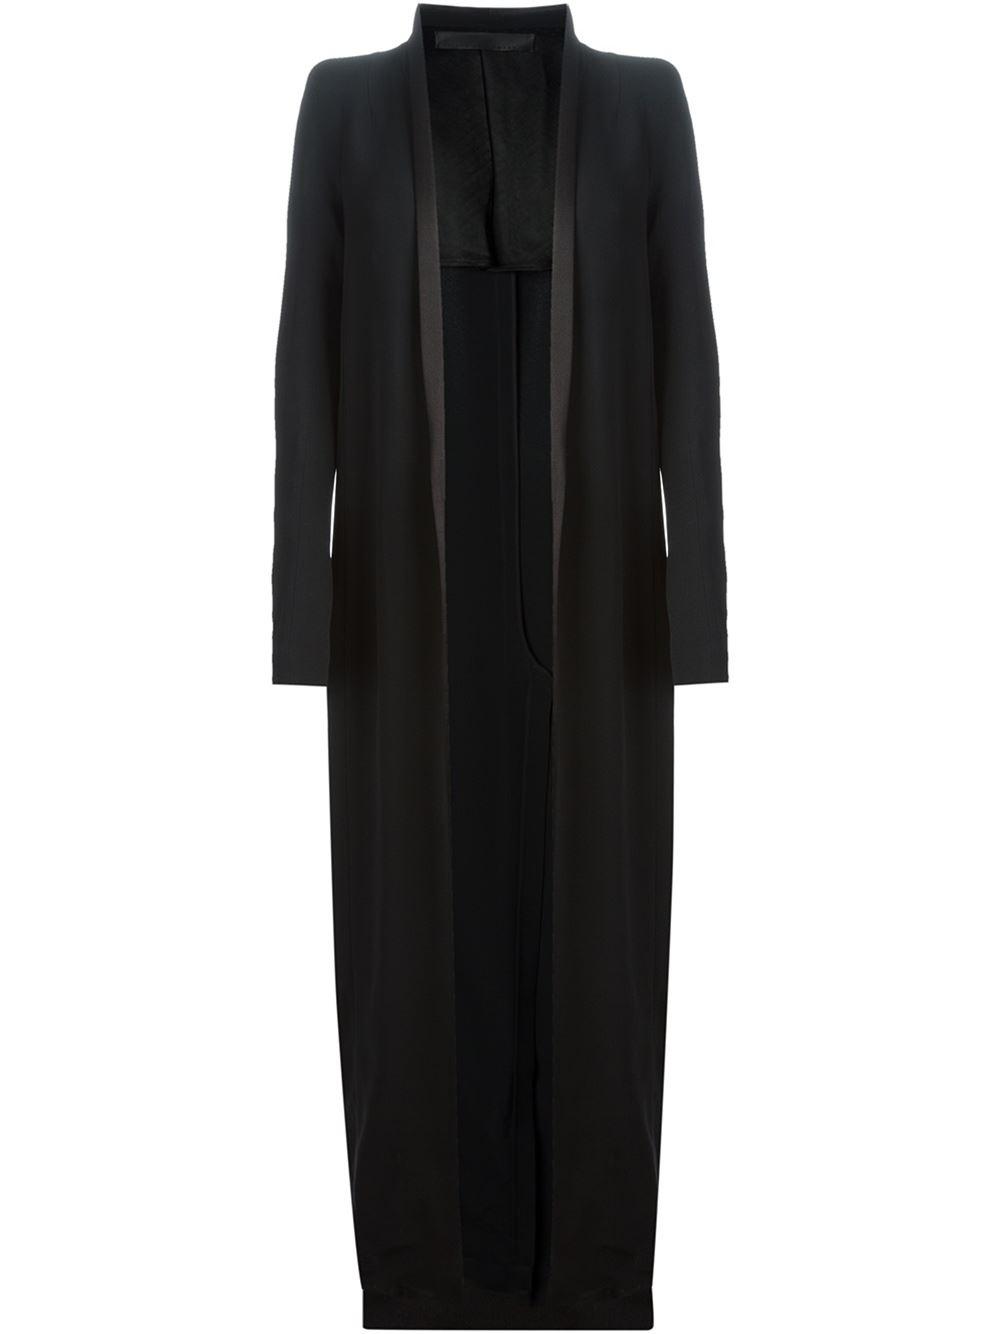 Haider Ackermann Crepe Tailored Floor Length Coat in Black | Lyst